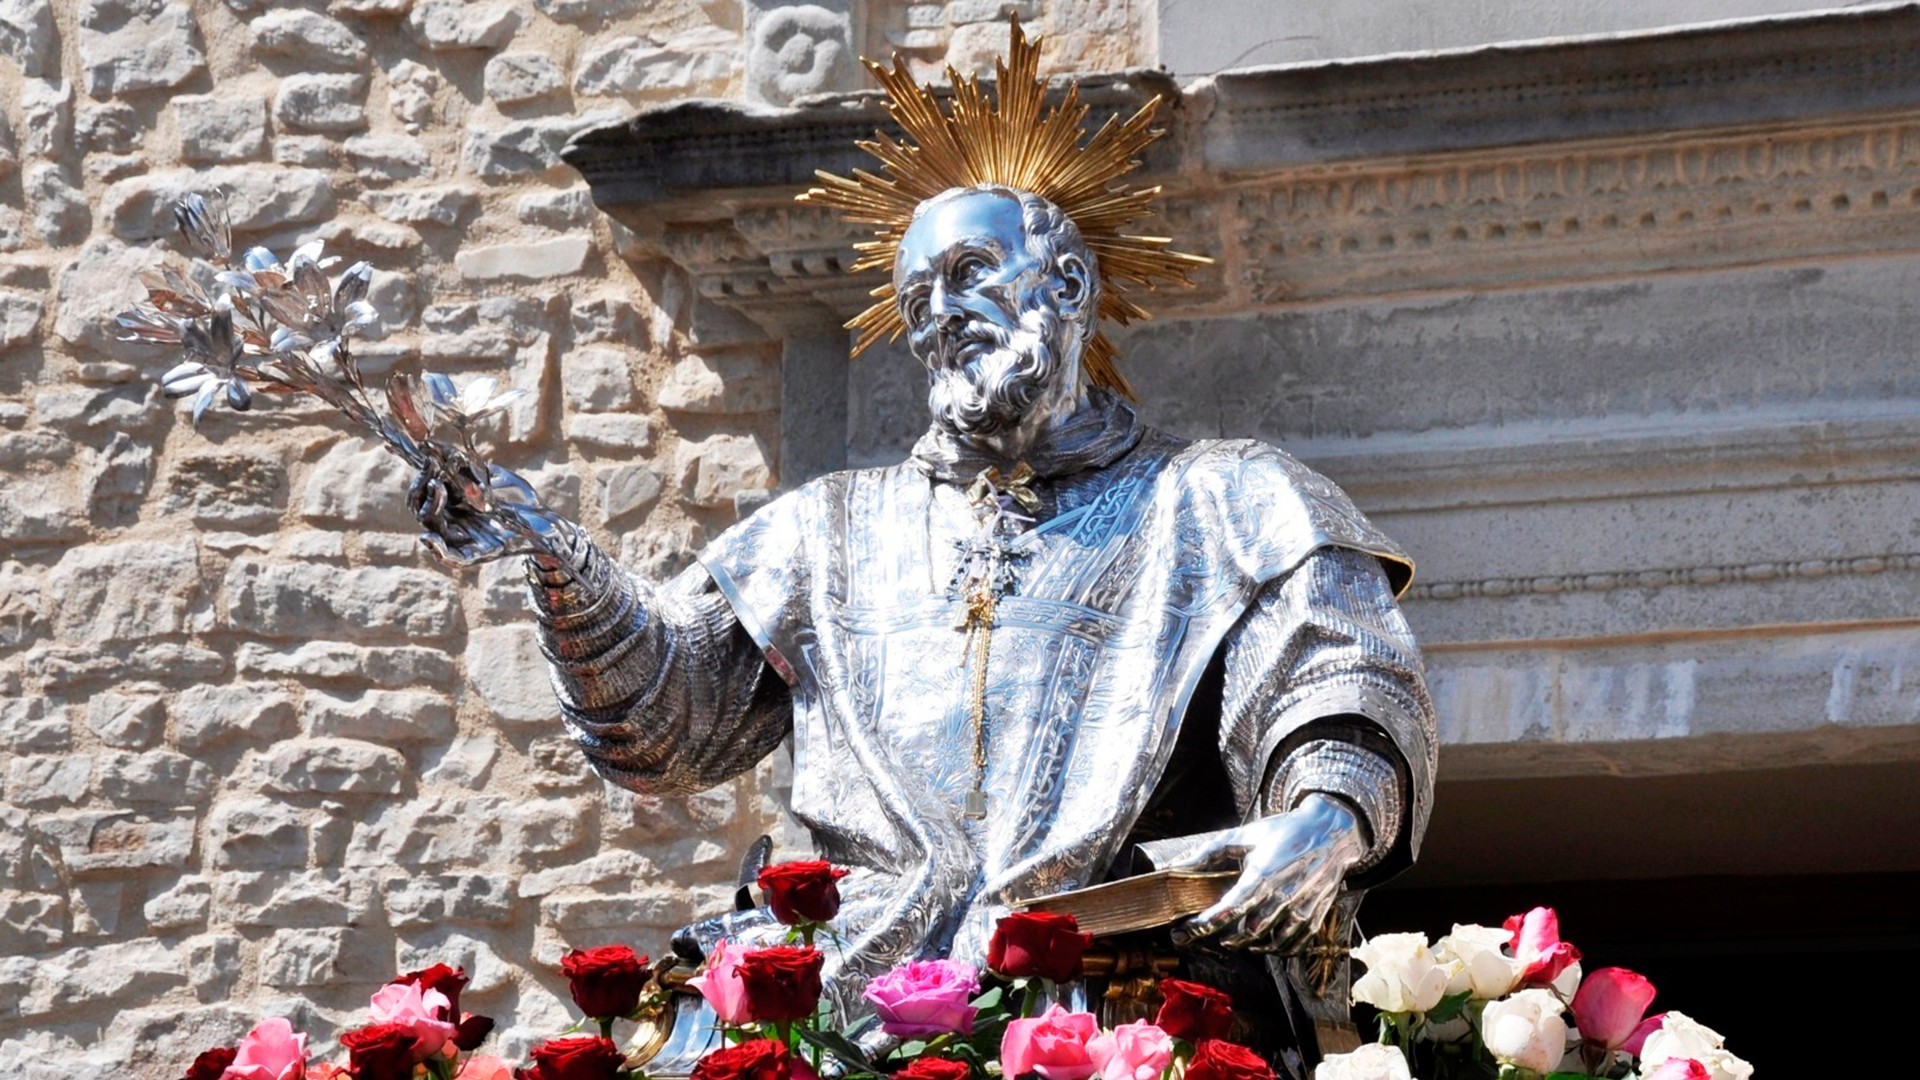 26 мая. Святой Филипп Нери, священник. Память